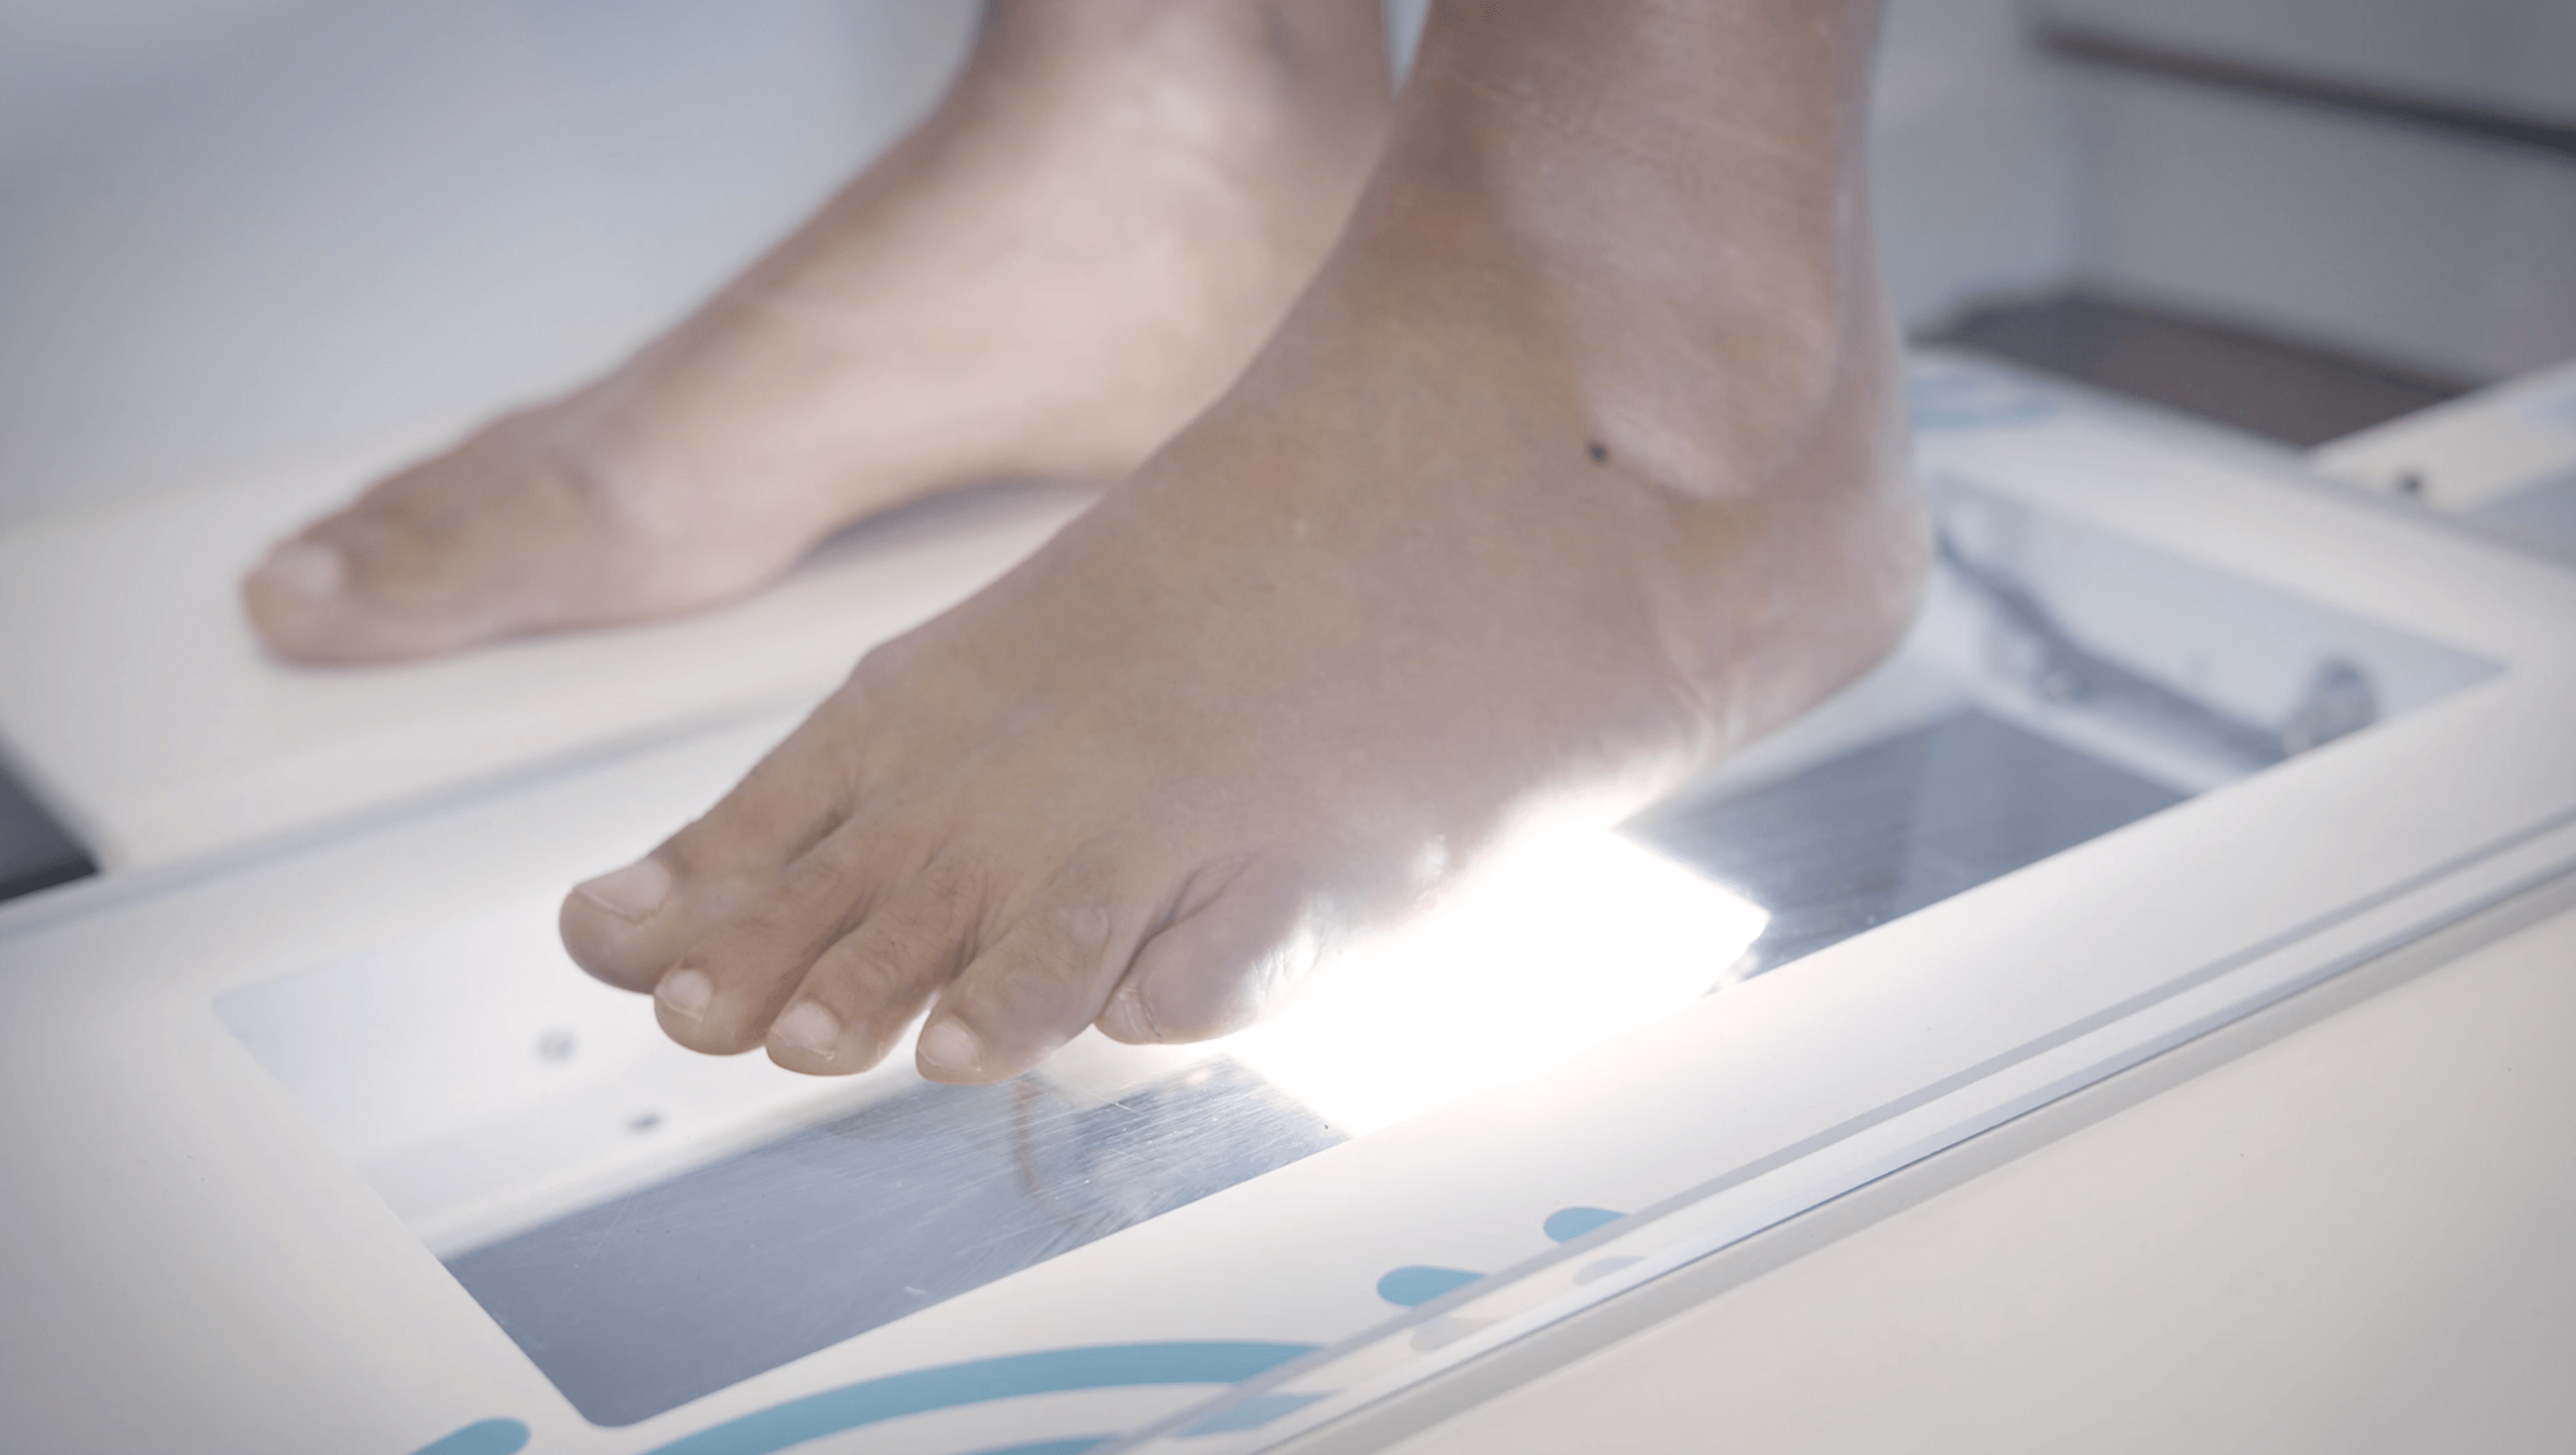 Platfod indlæg | Book tid til dine fødder få en fodanalyse »